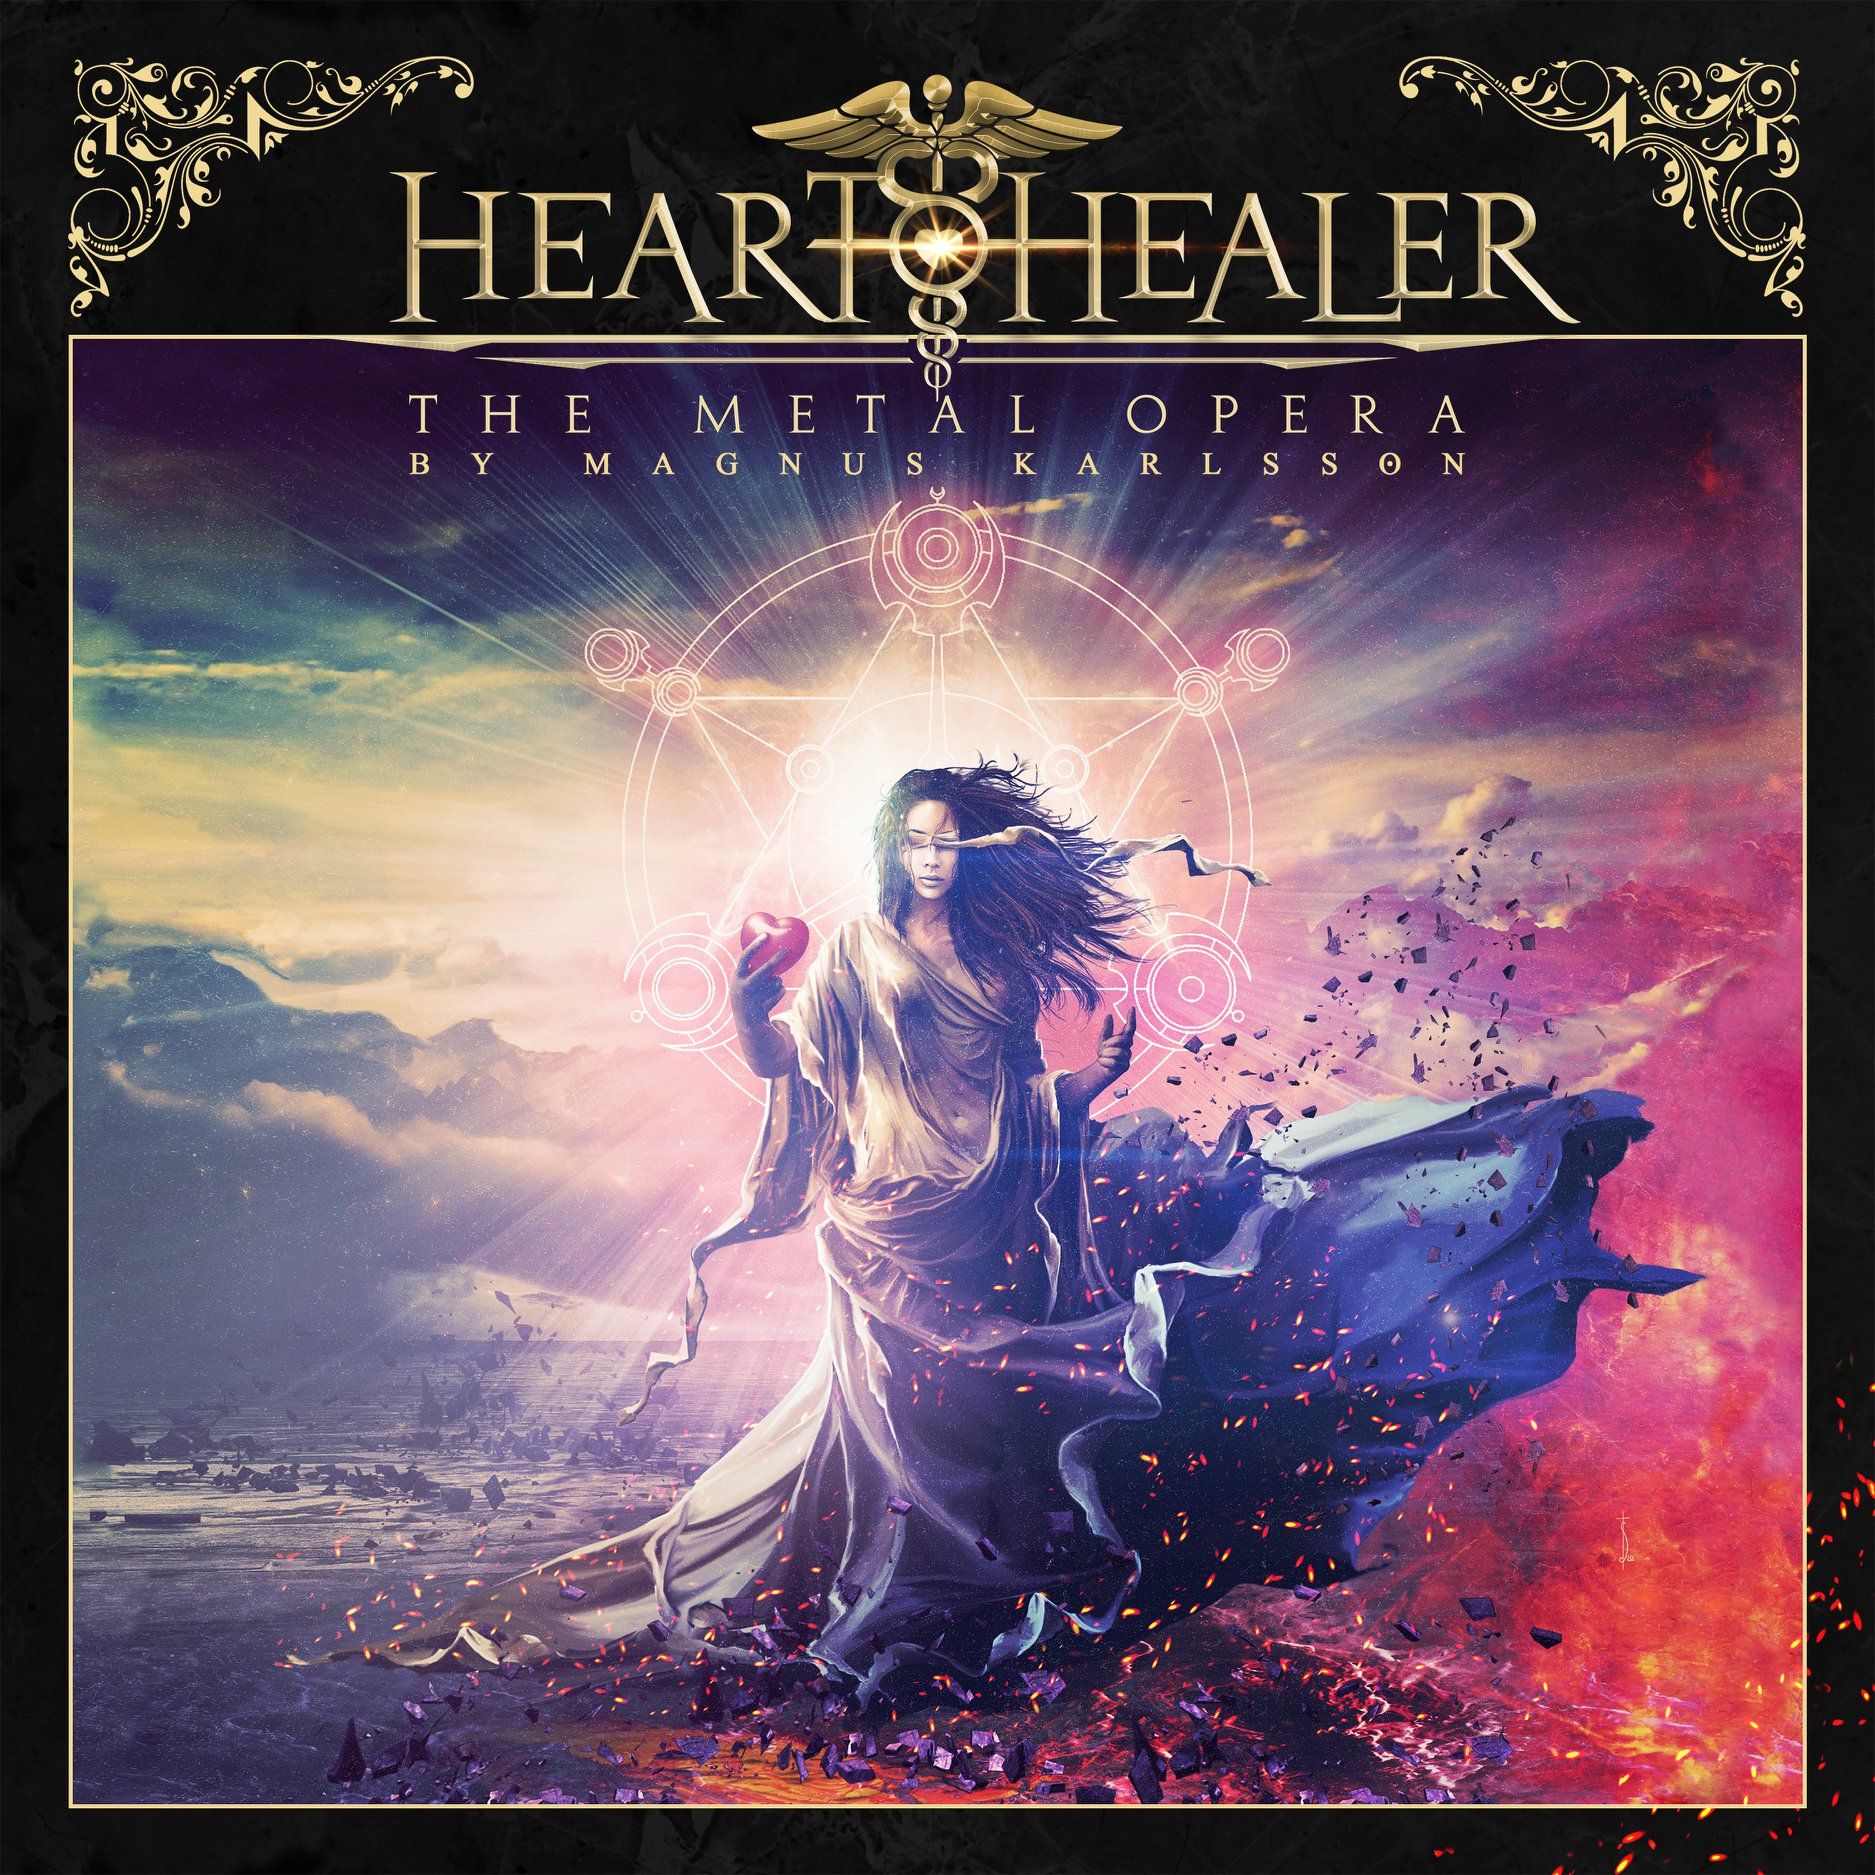 Gitarrist Magnus Karlsson veröffentlicht Debüt-Album mit Heart Healer im März